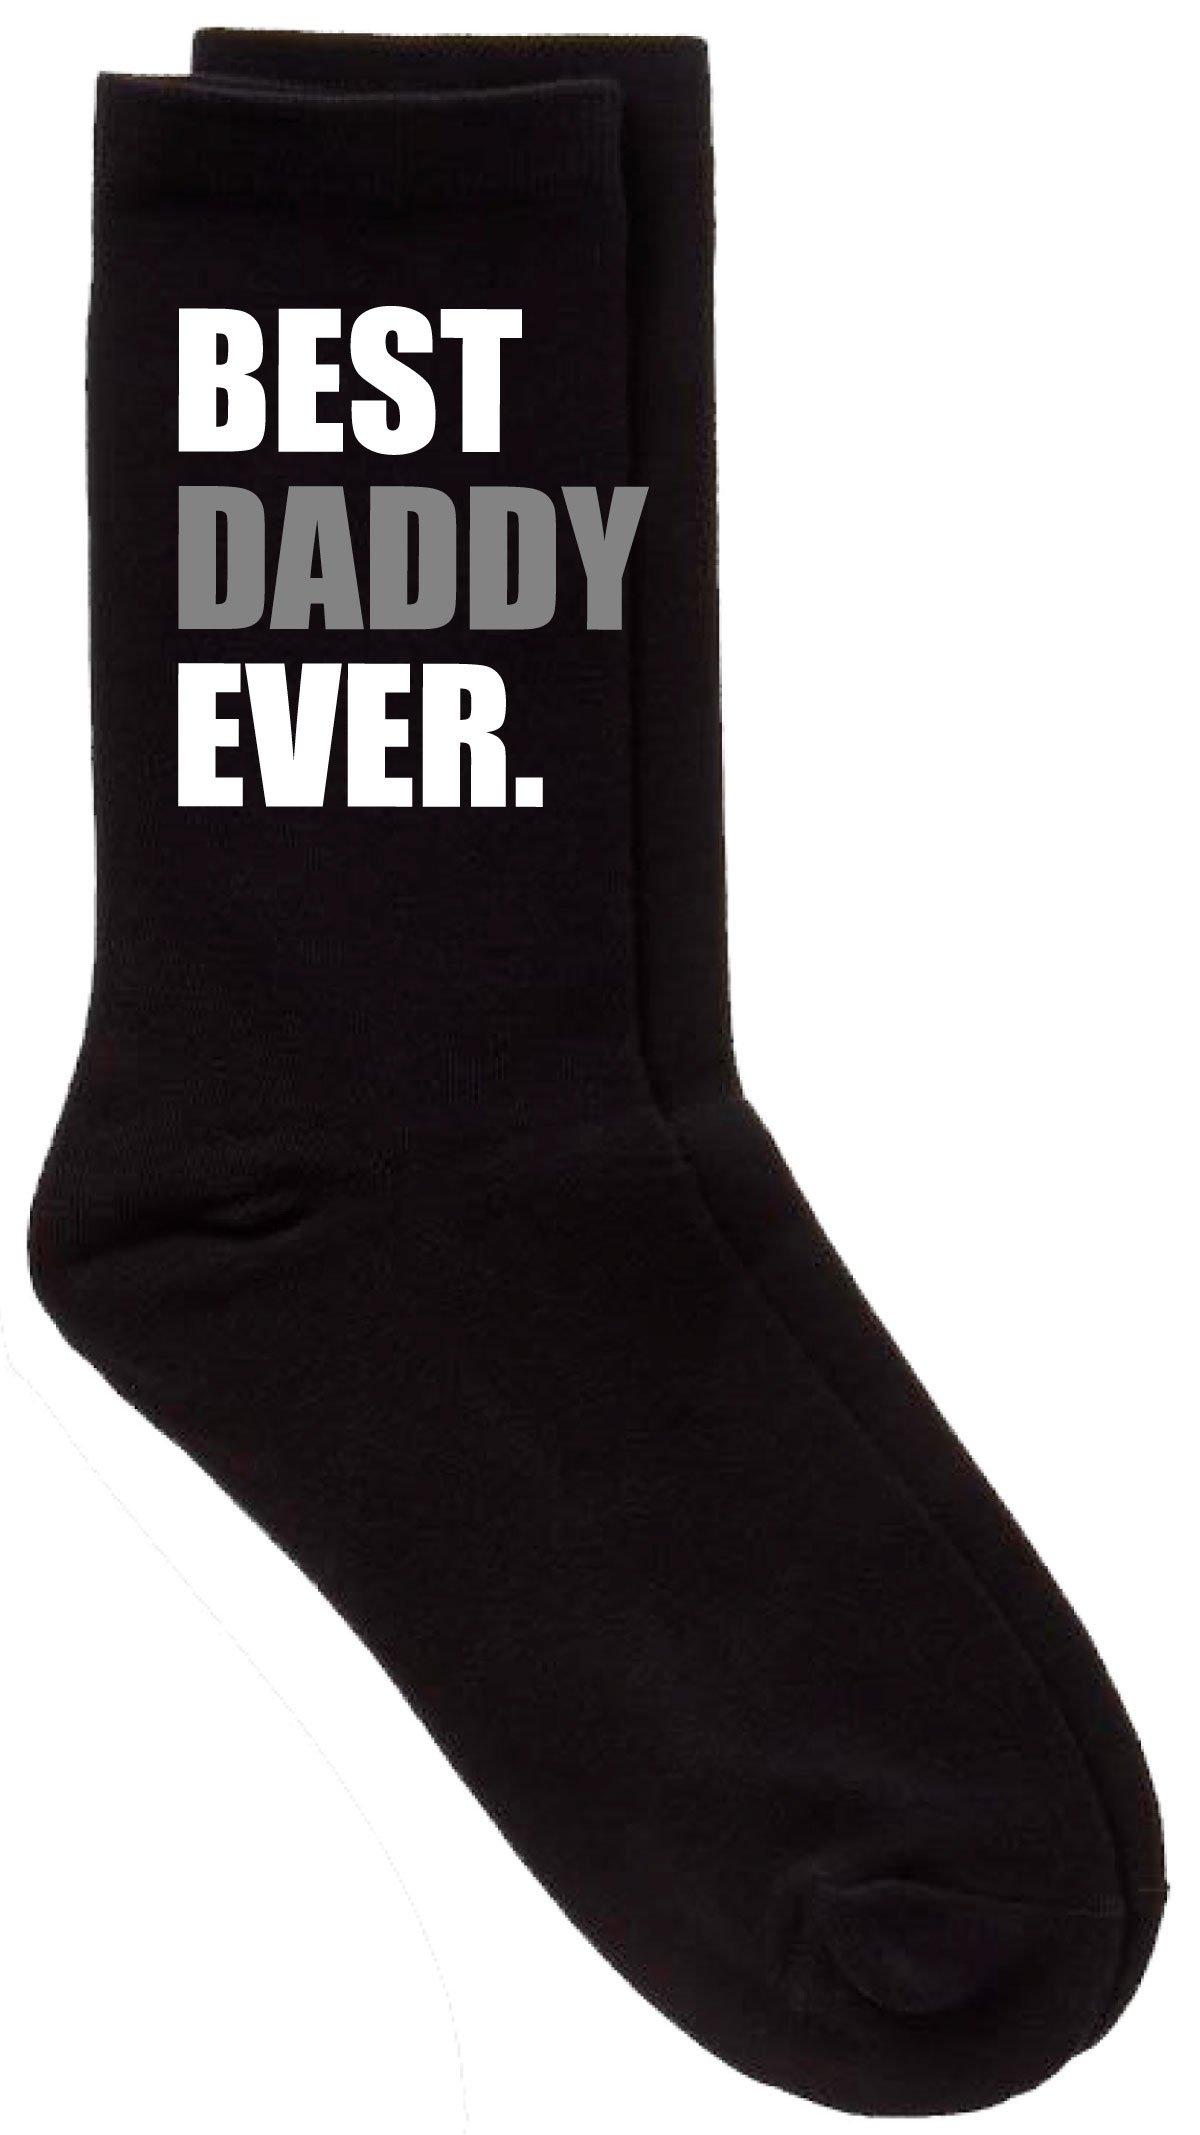 черные носки best dad ever v2 60 second makeover черный Черные носки Best Daddy Ever V2 60 SECOND MAKEOVER, черный